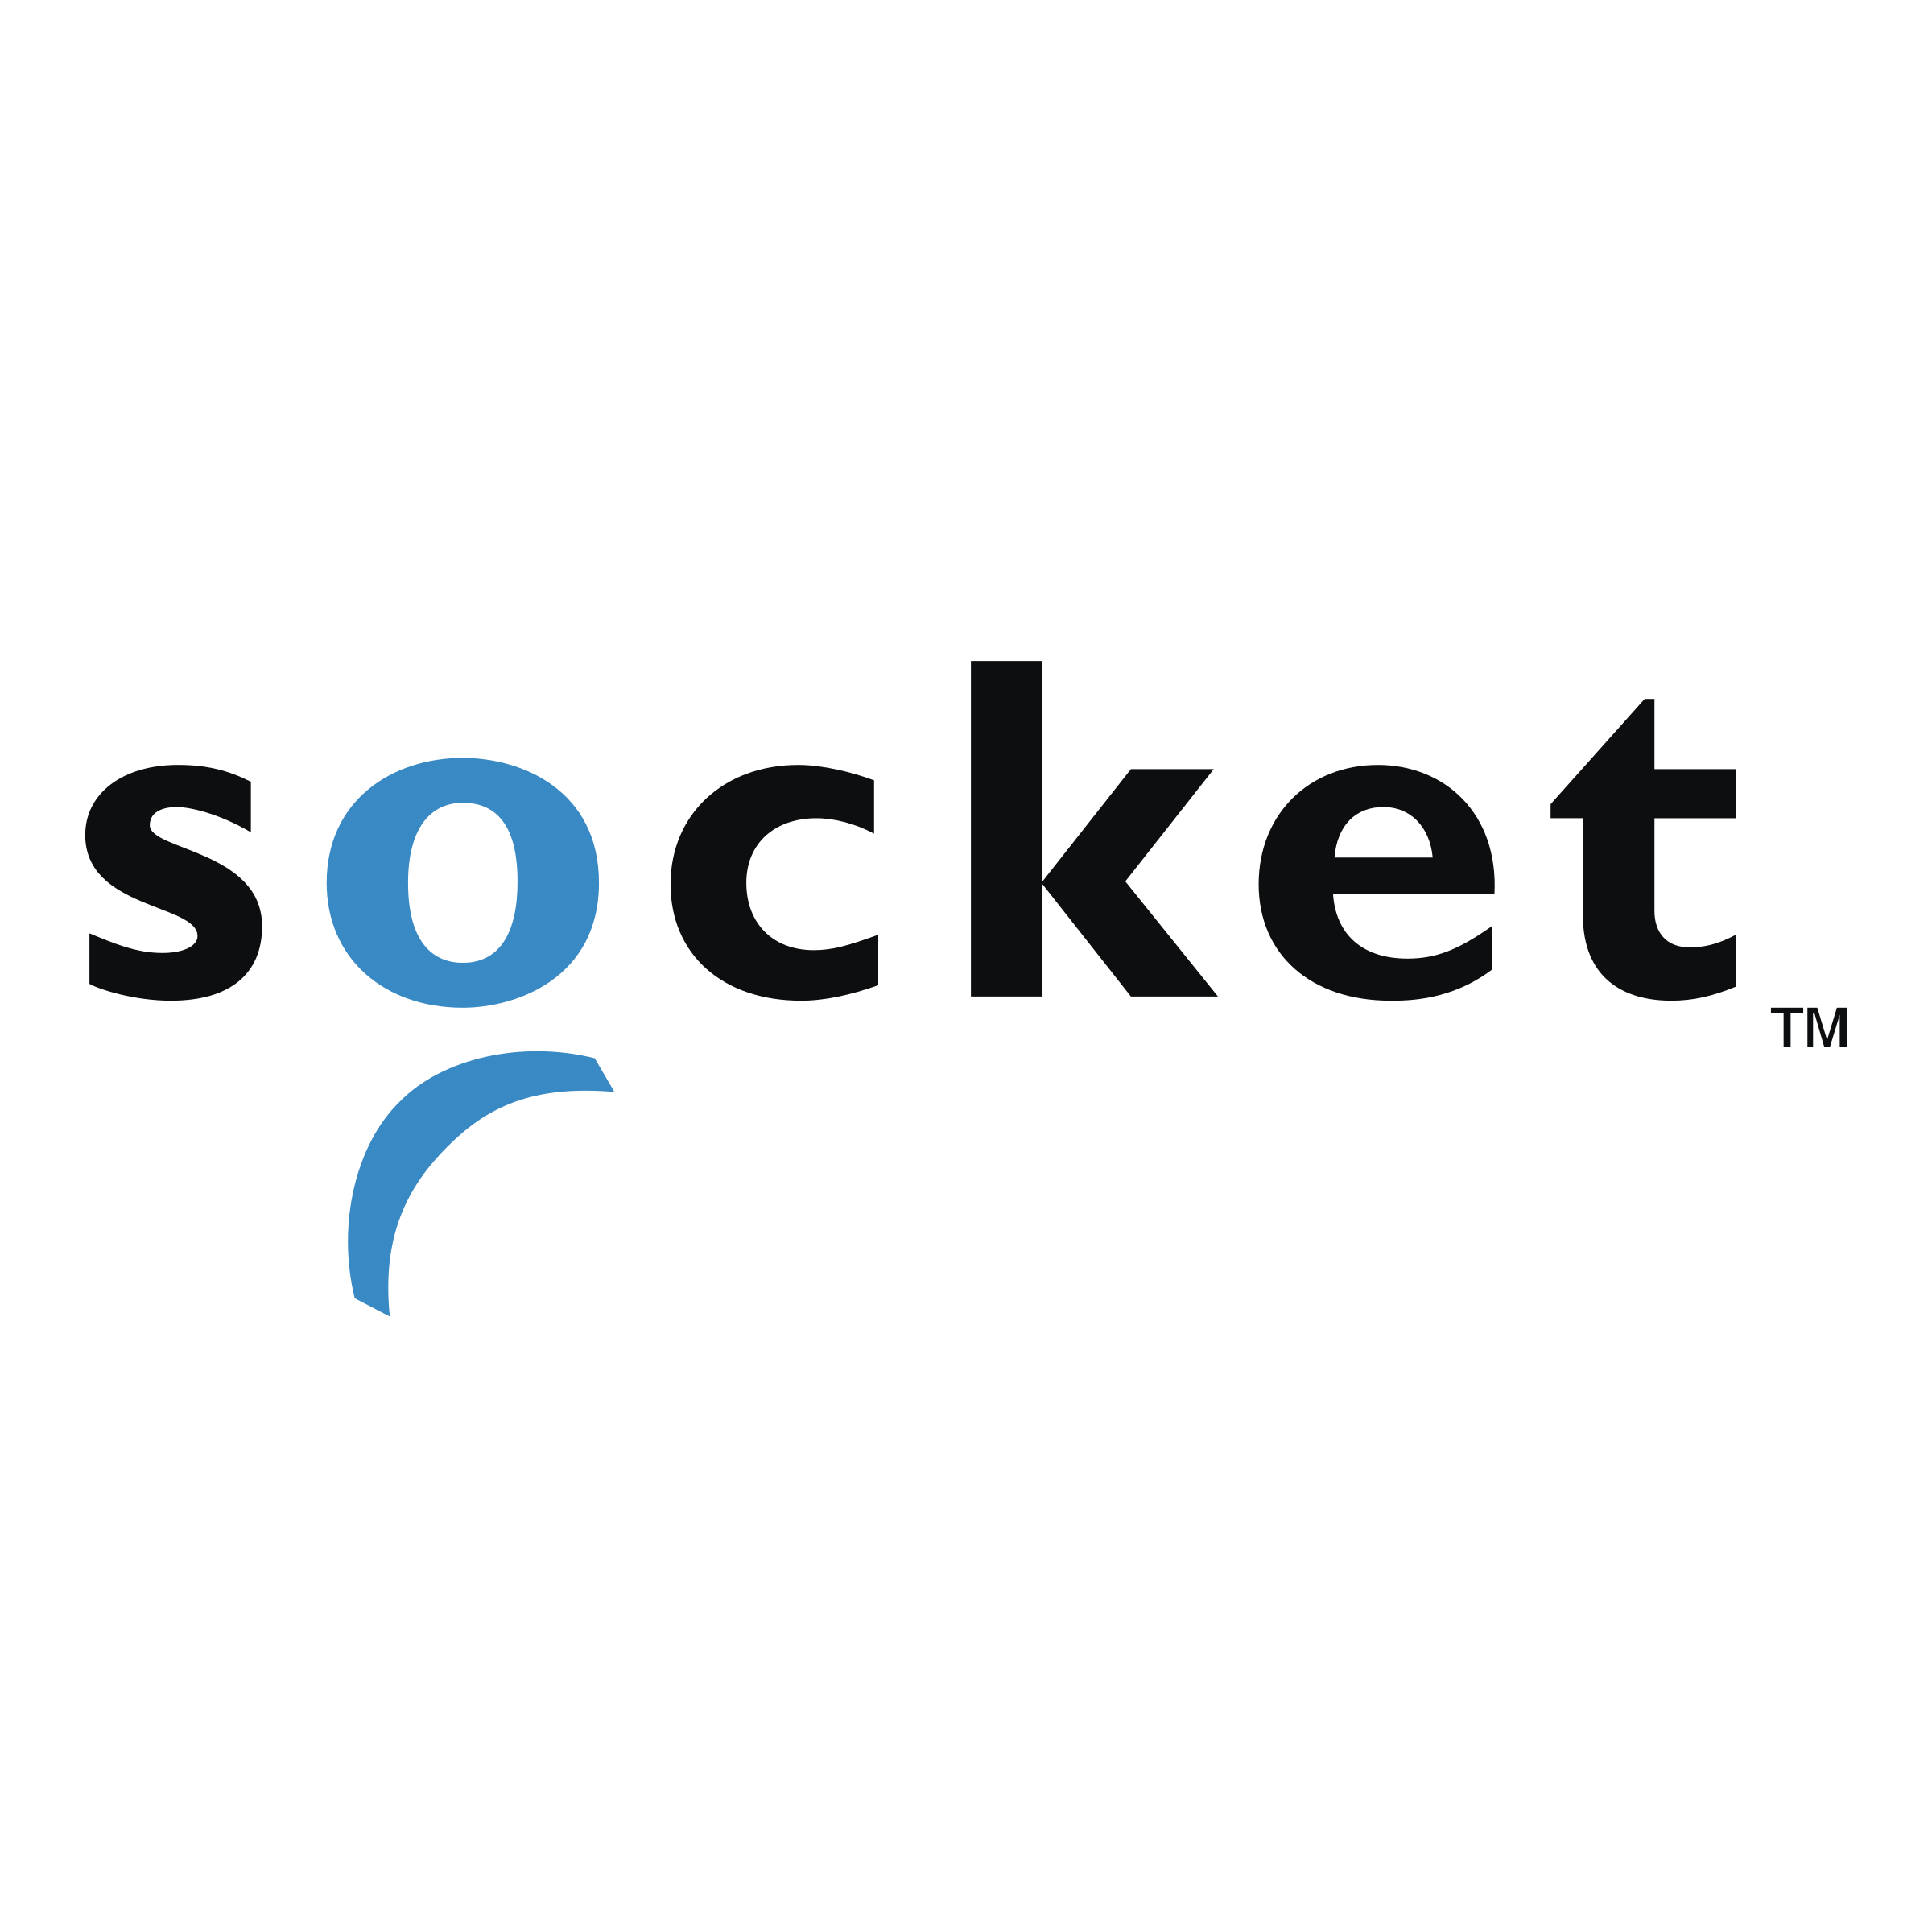 Socket Logo - Socket Logo PNG Transparent & SVG Vector - Freebie Supply